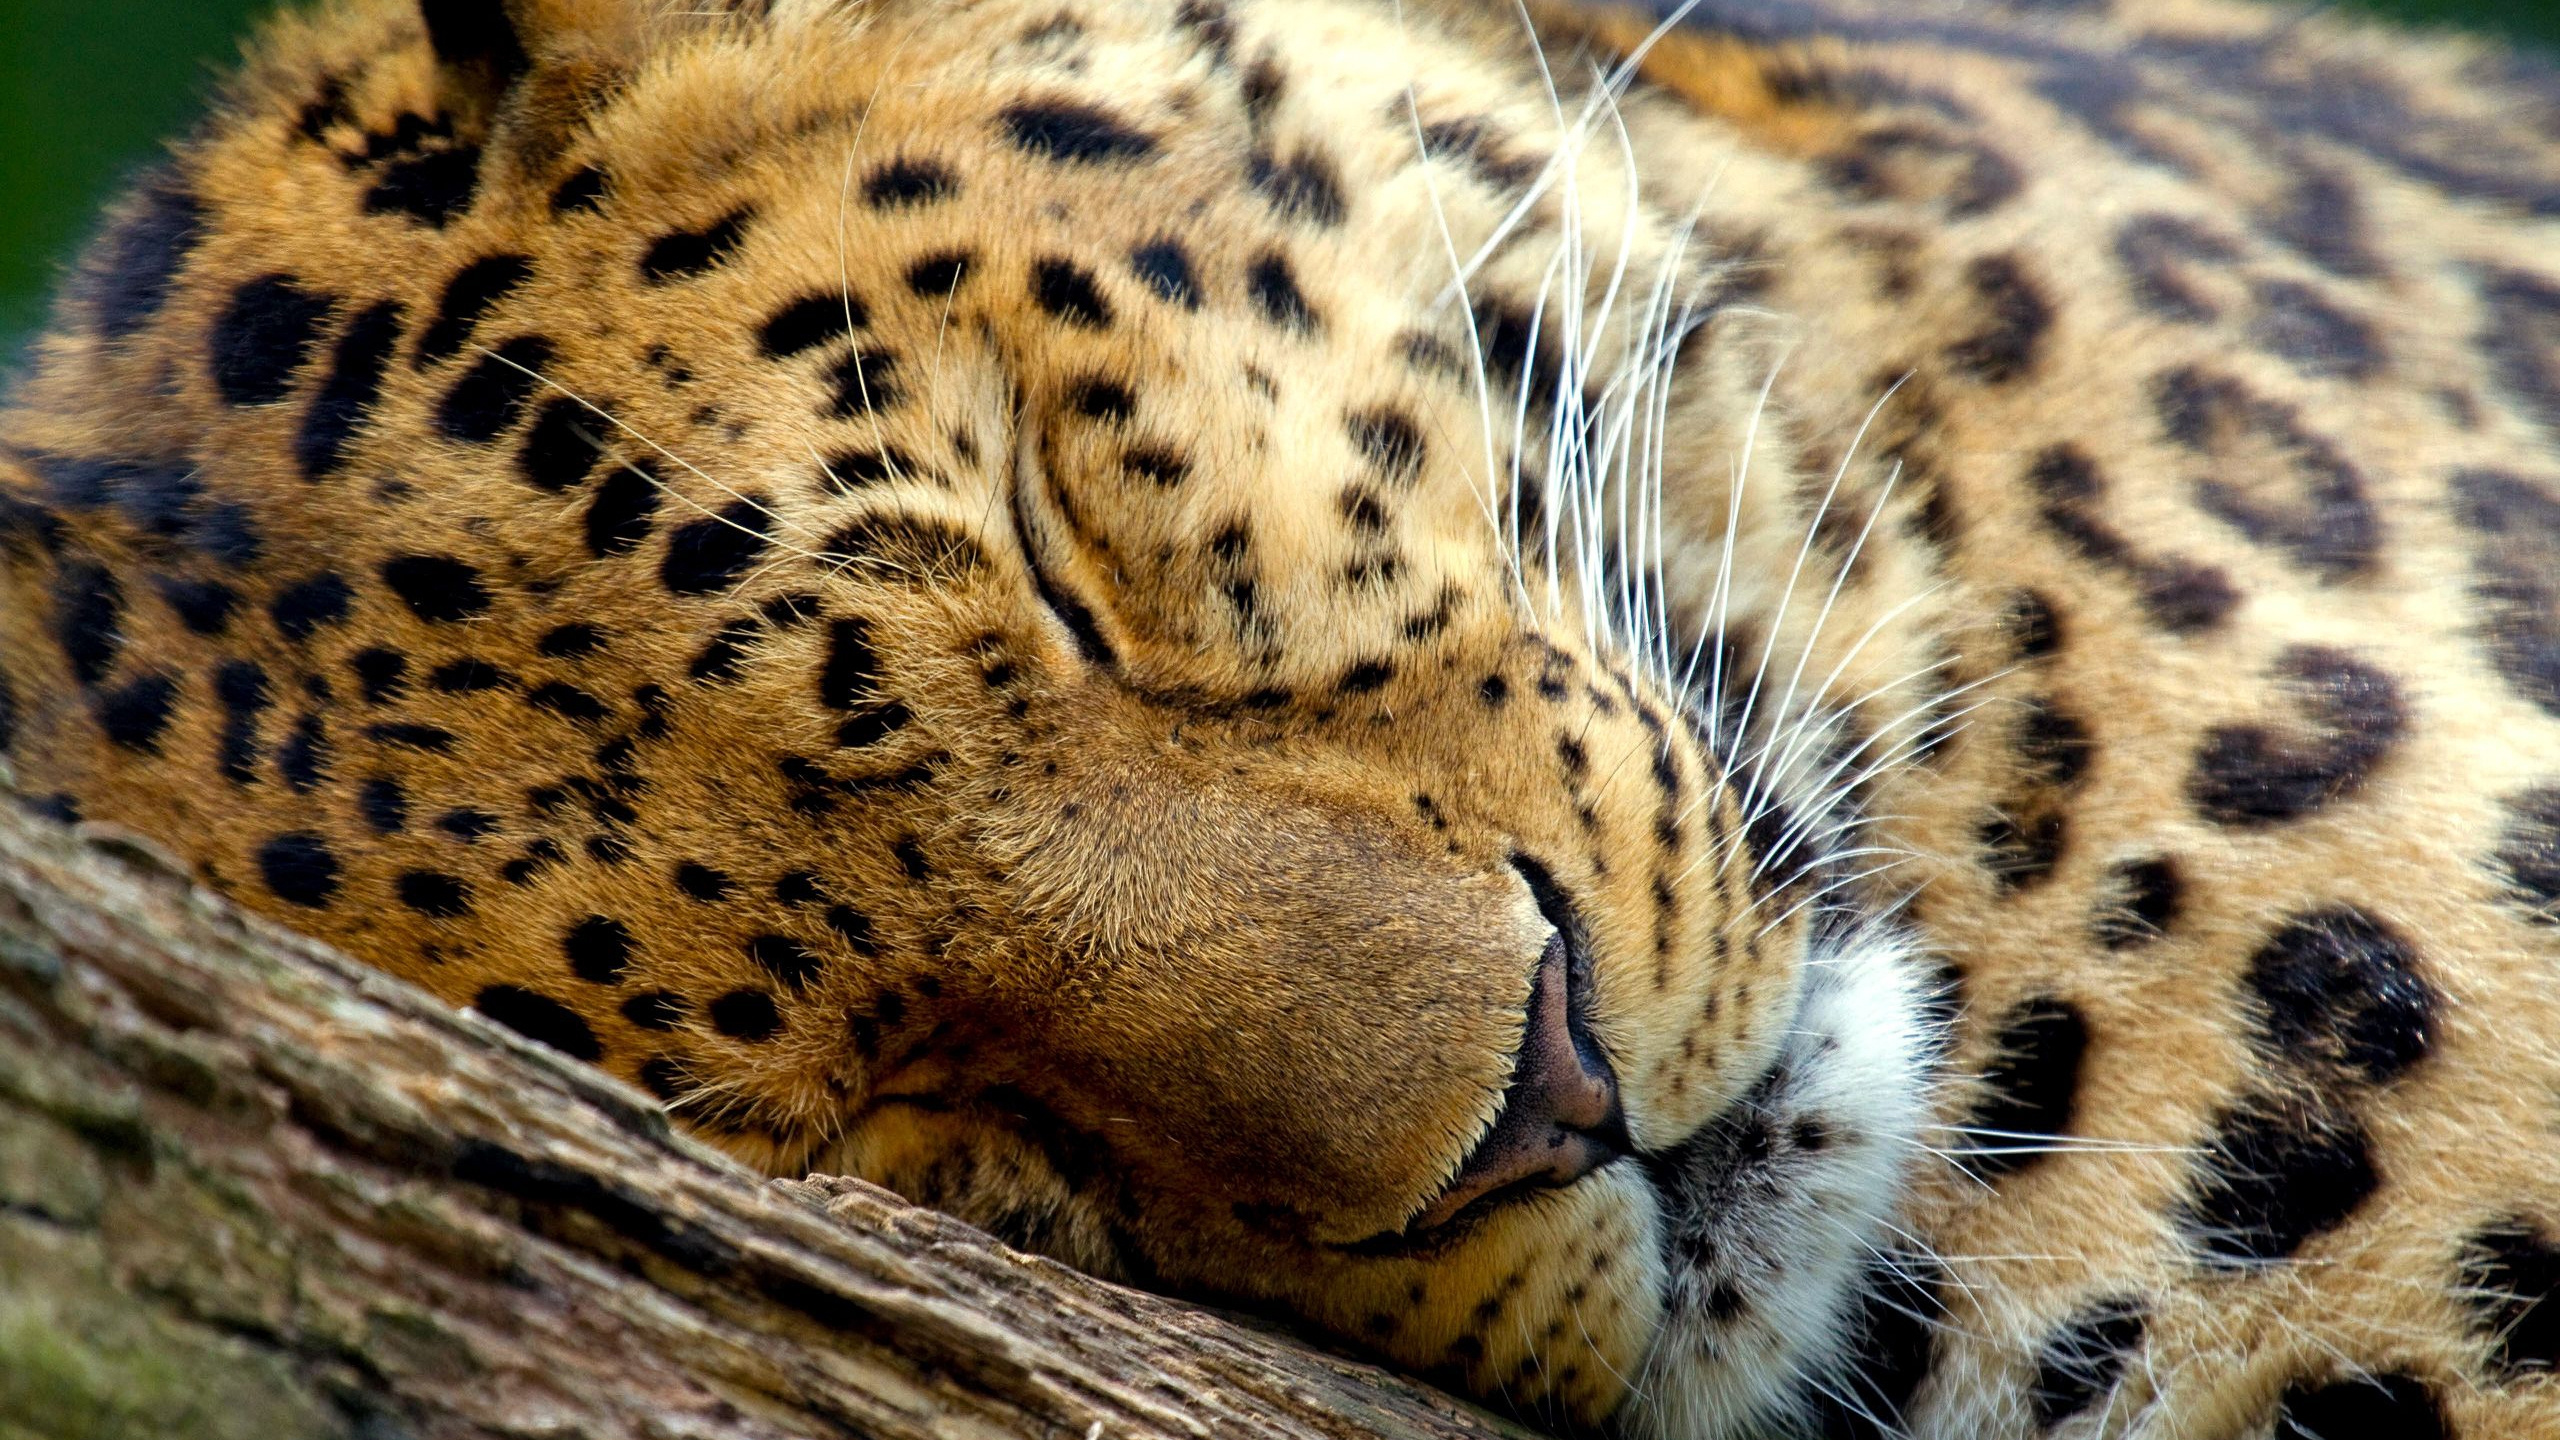 捷豹, 猫科, 狮子, 猎豹, 野生动物 壁纸 2560x1440 允许